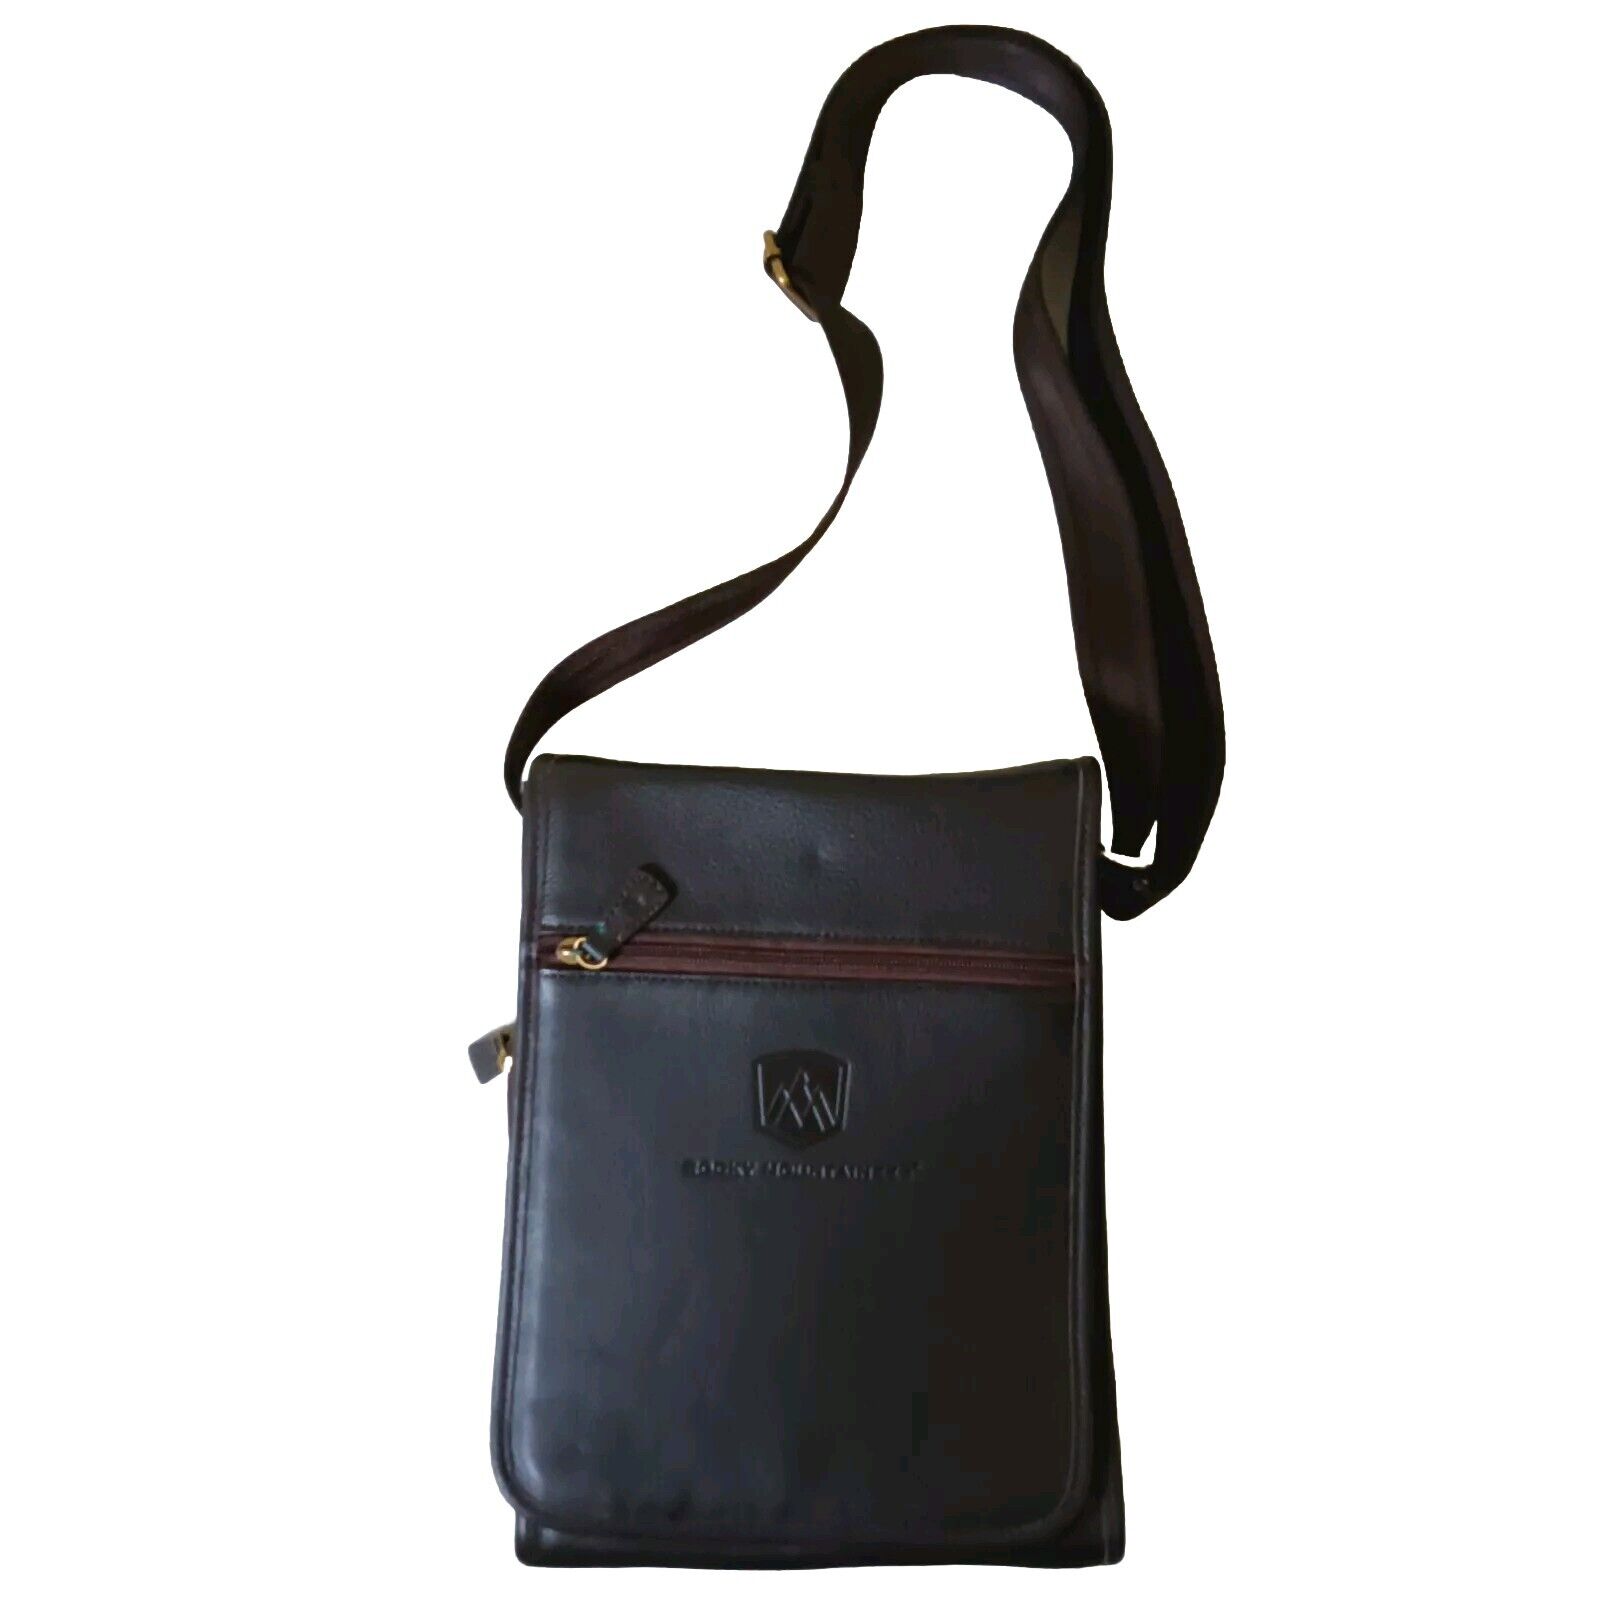 Vintage Rocky Mountaineer Leather Bag Adjustable strap brown shoulder Satchel